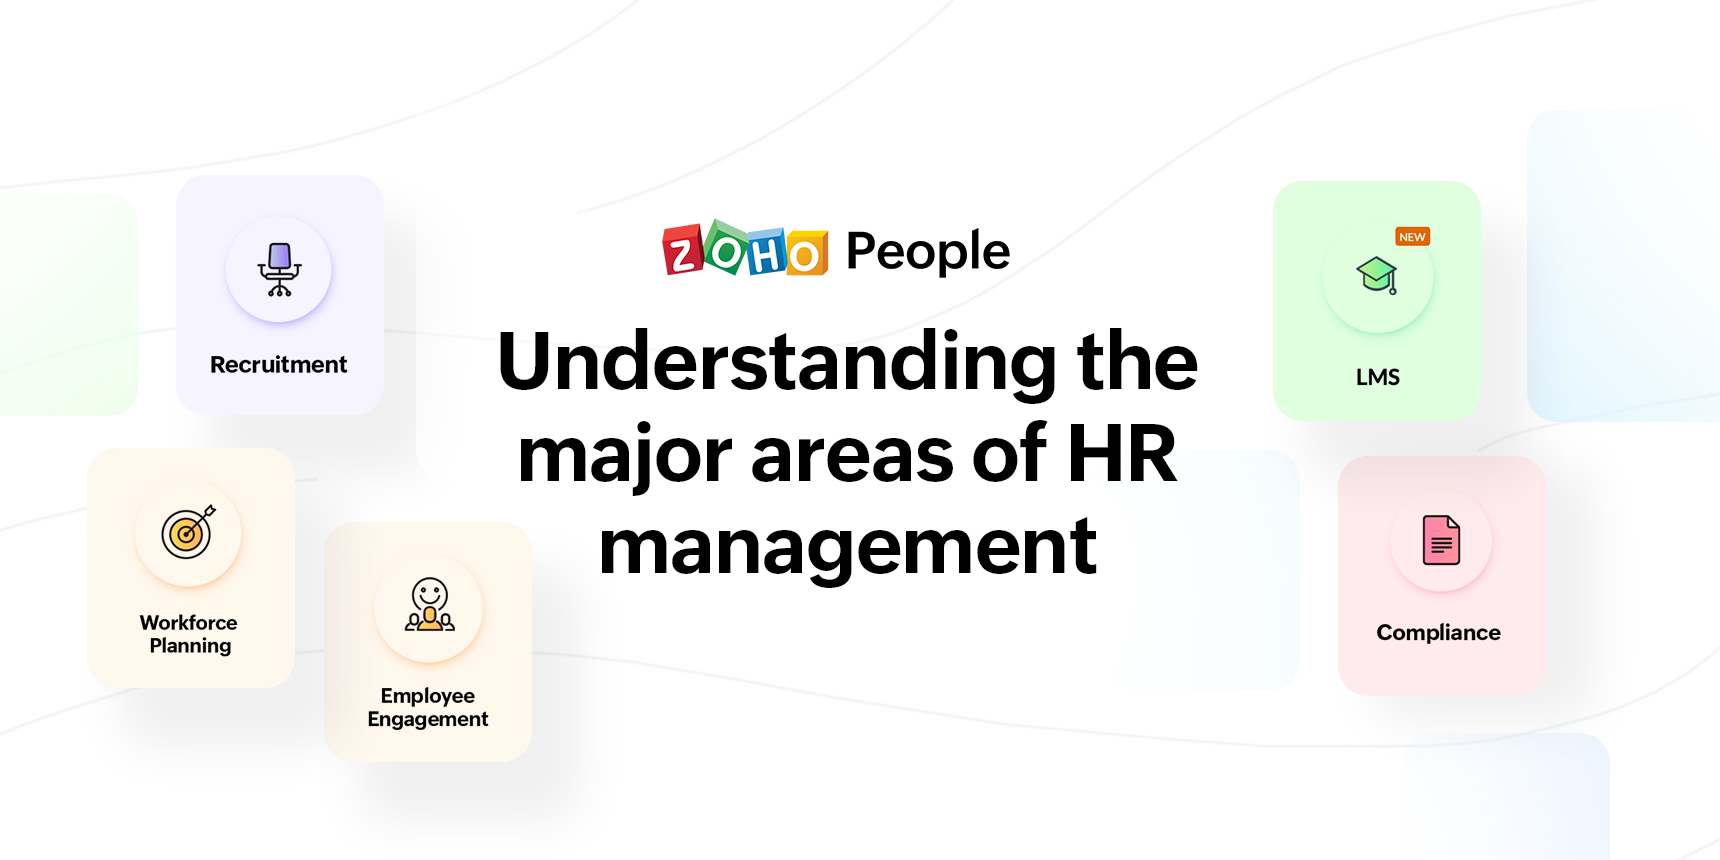 5 Areas of HR management5 Areas of HR management